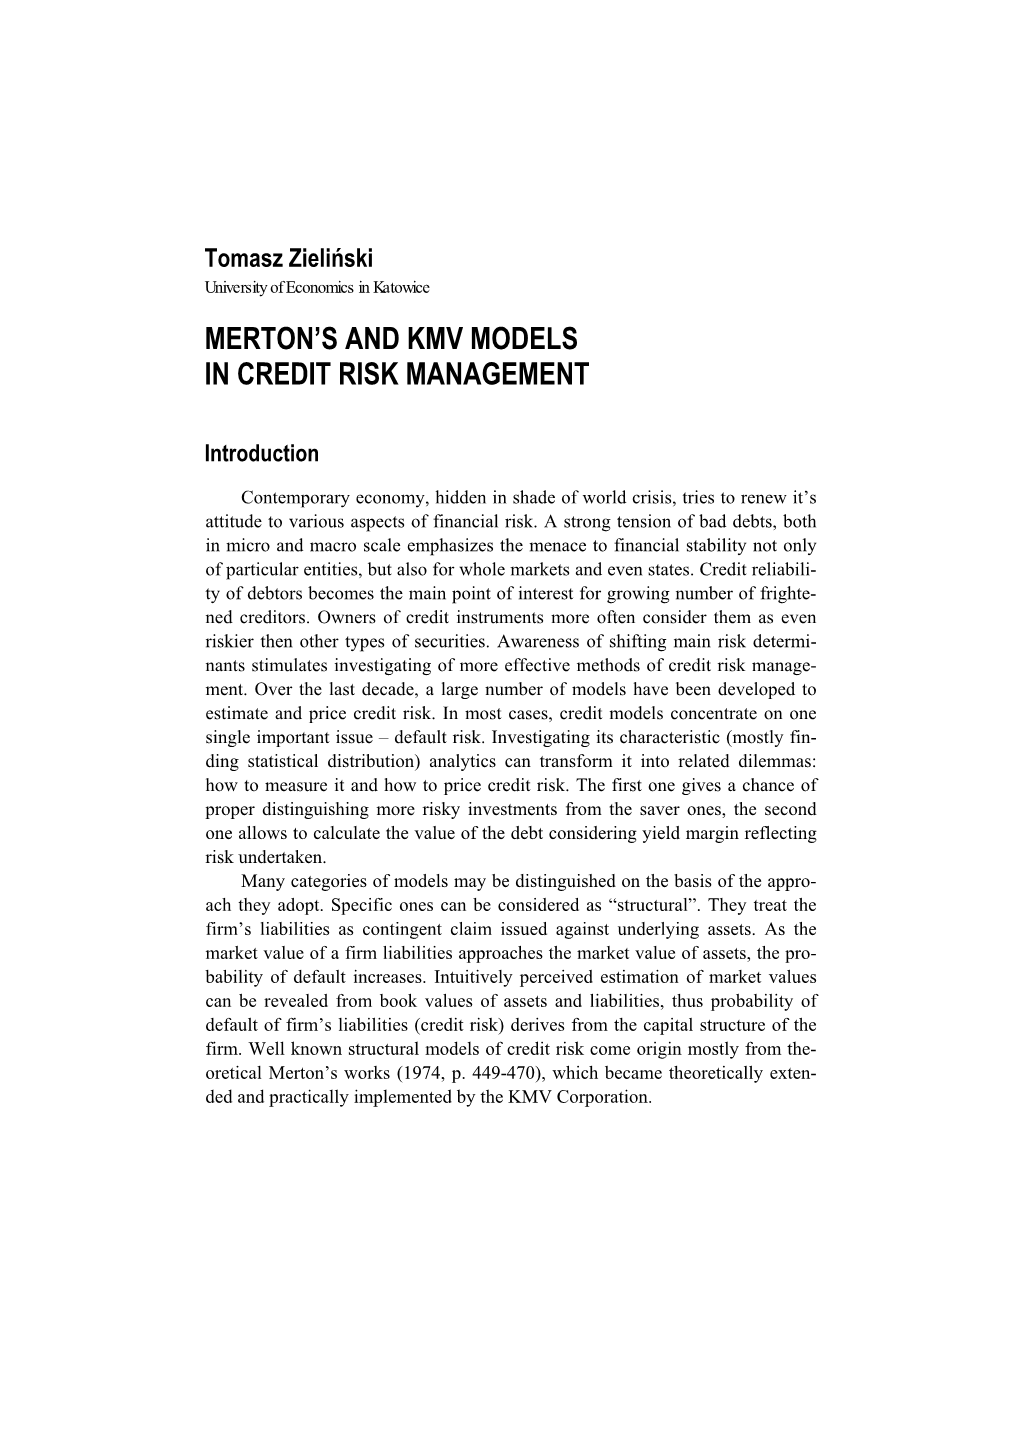 Merton's and Kmv Models in Credit Risk Management